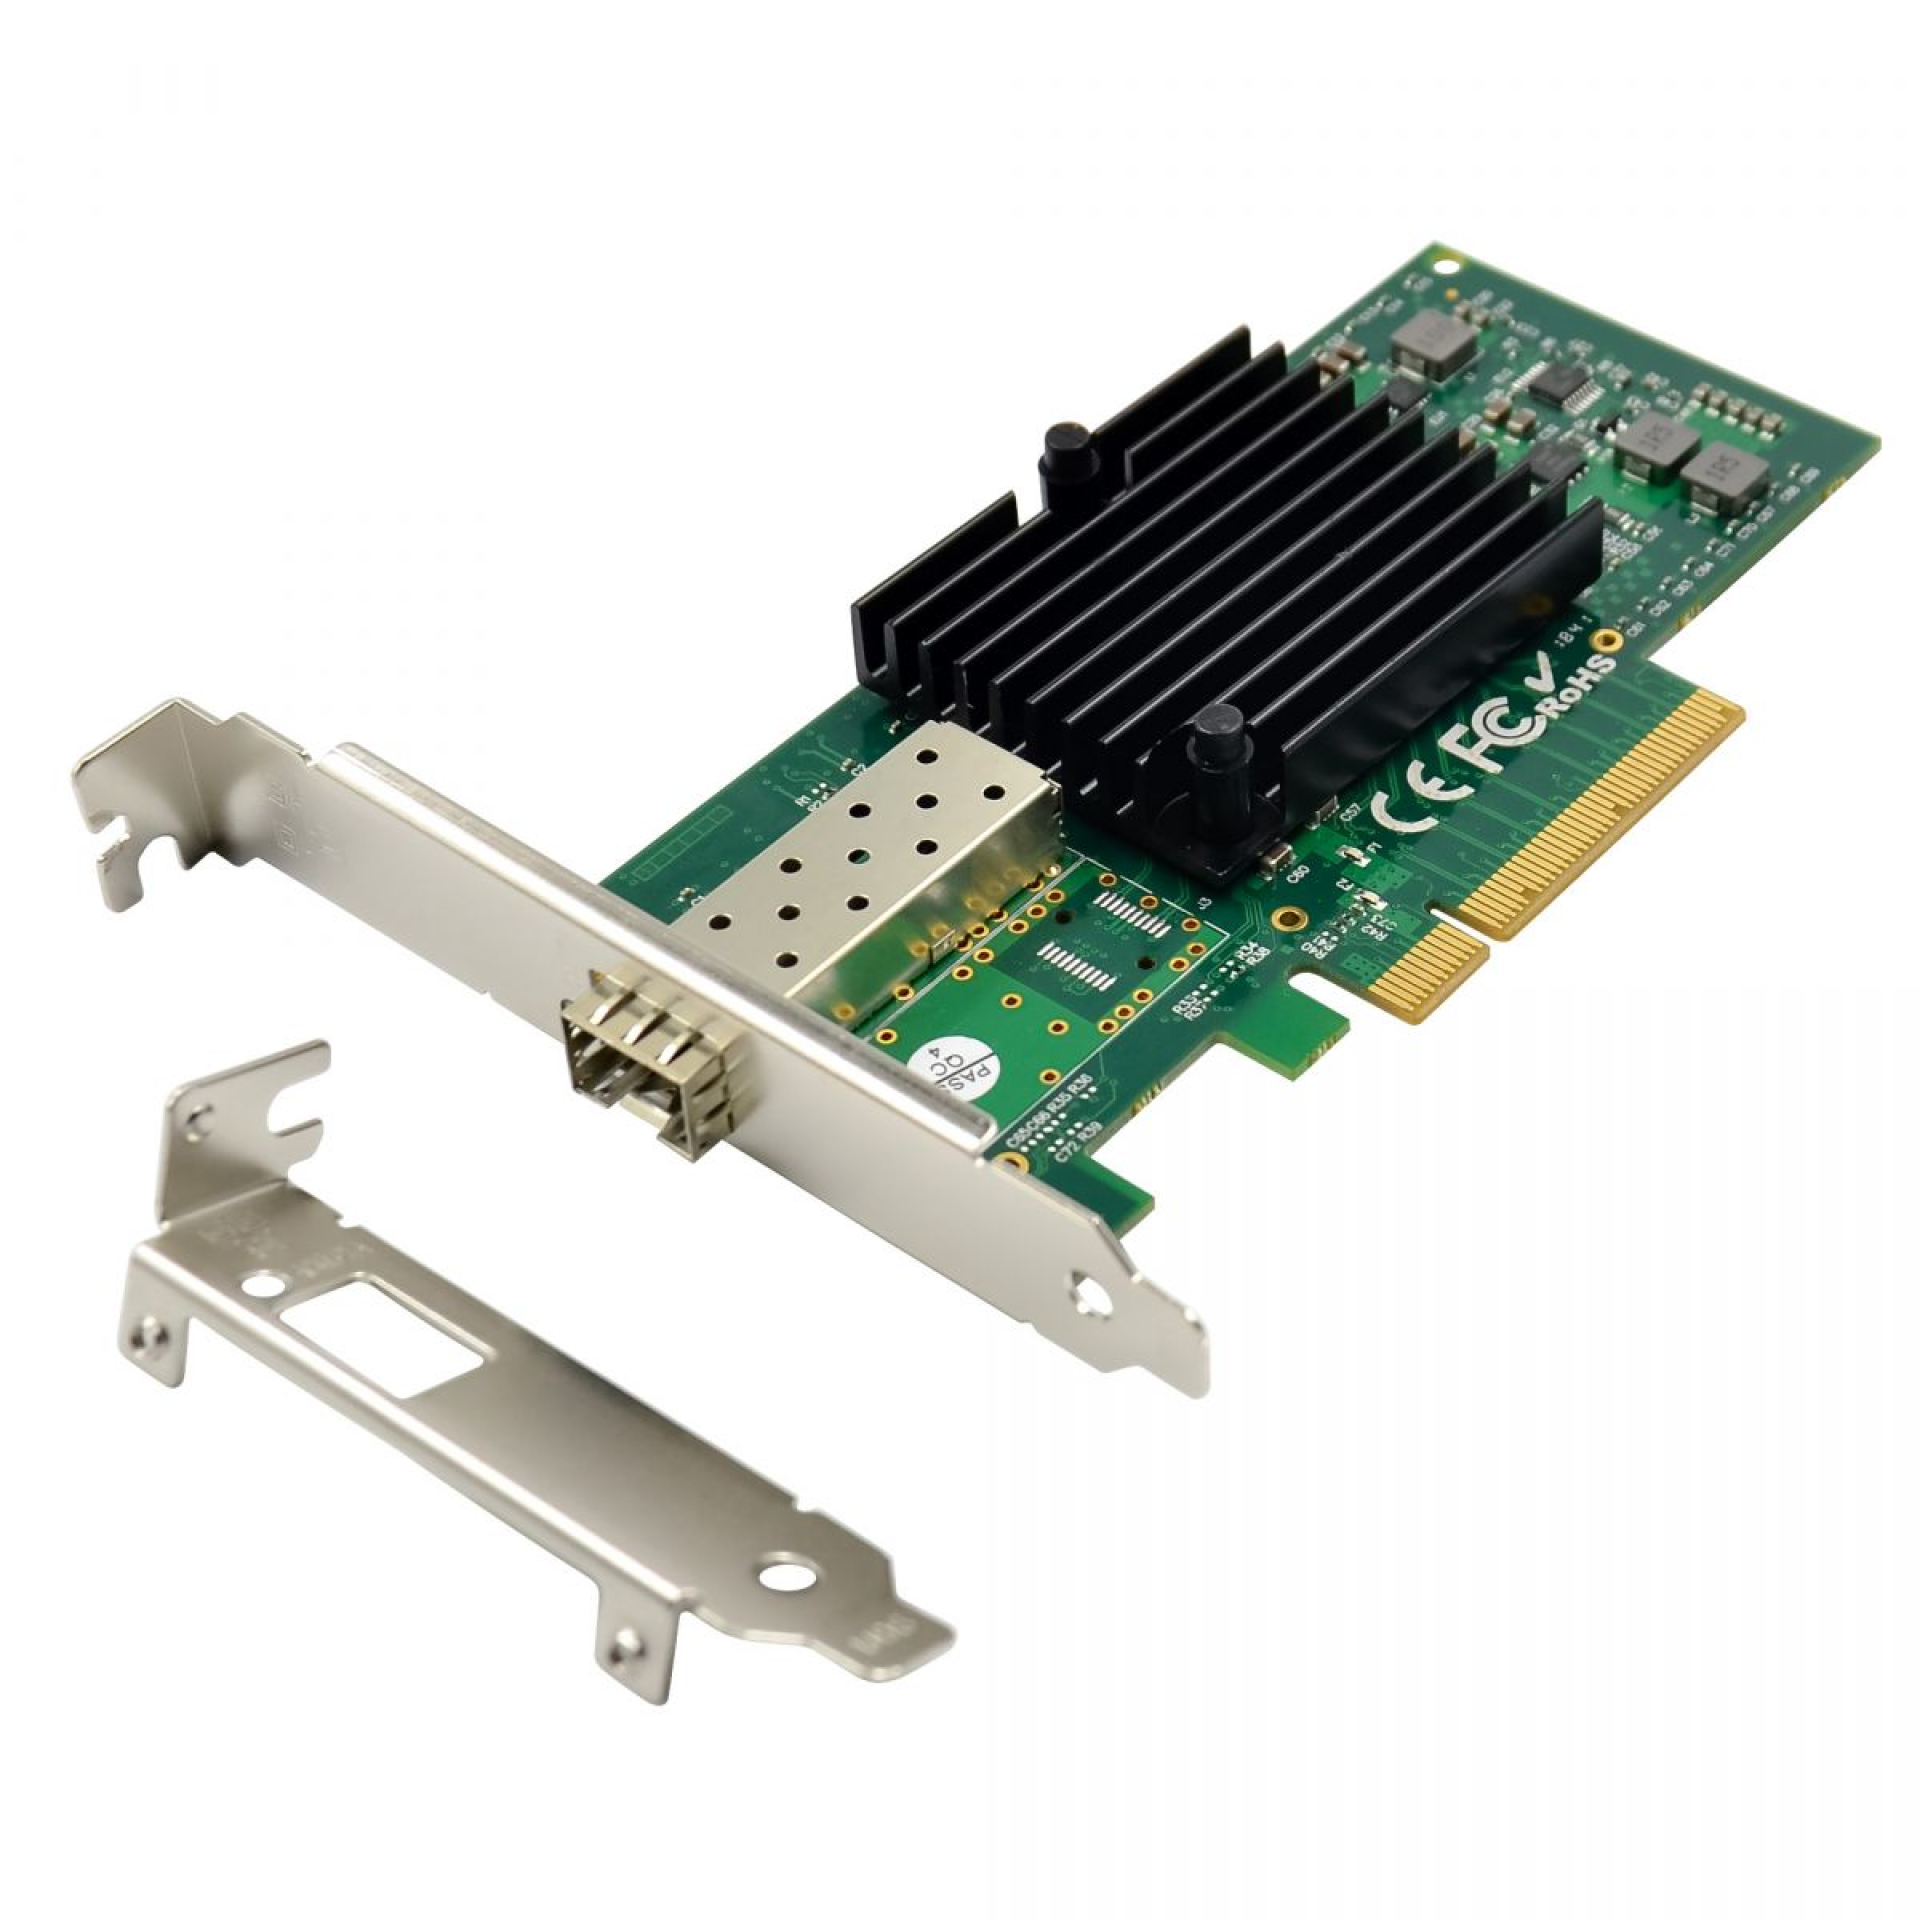 10 Gigabit fiber optic PCIe network card, 1xSFP+